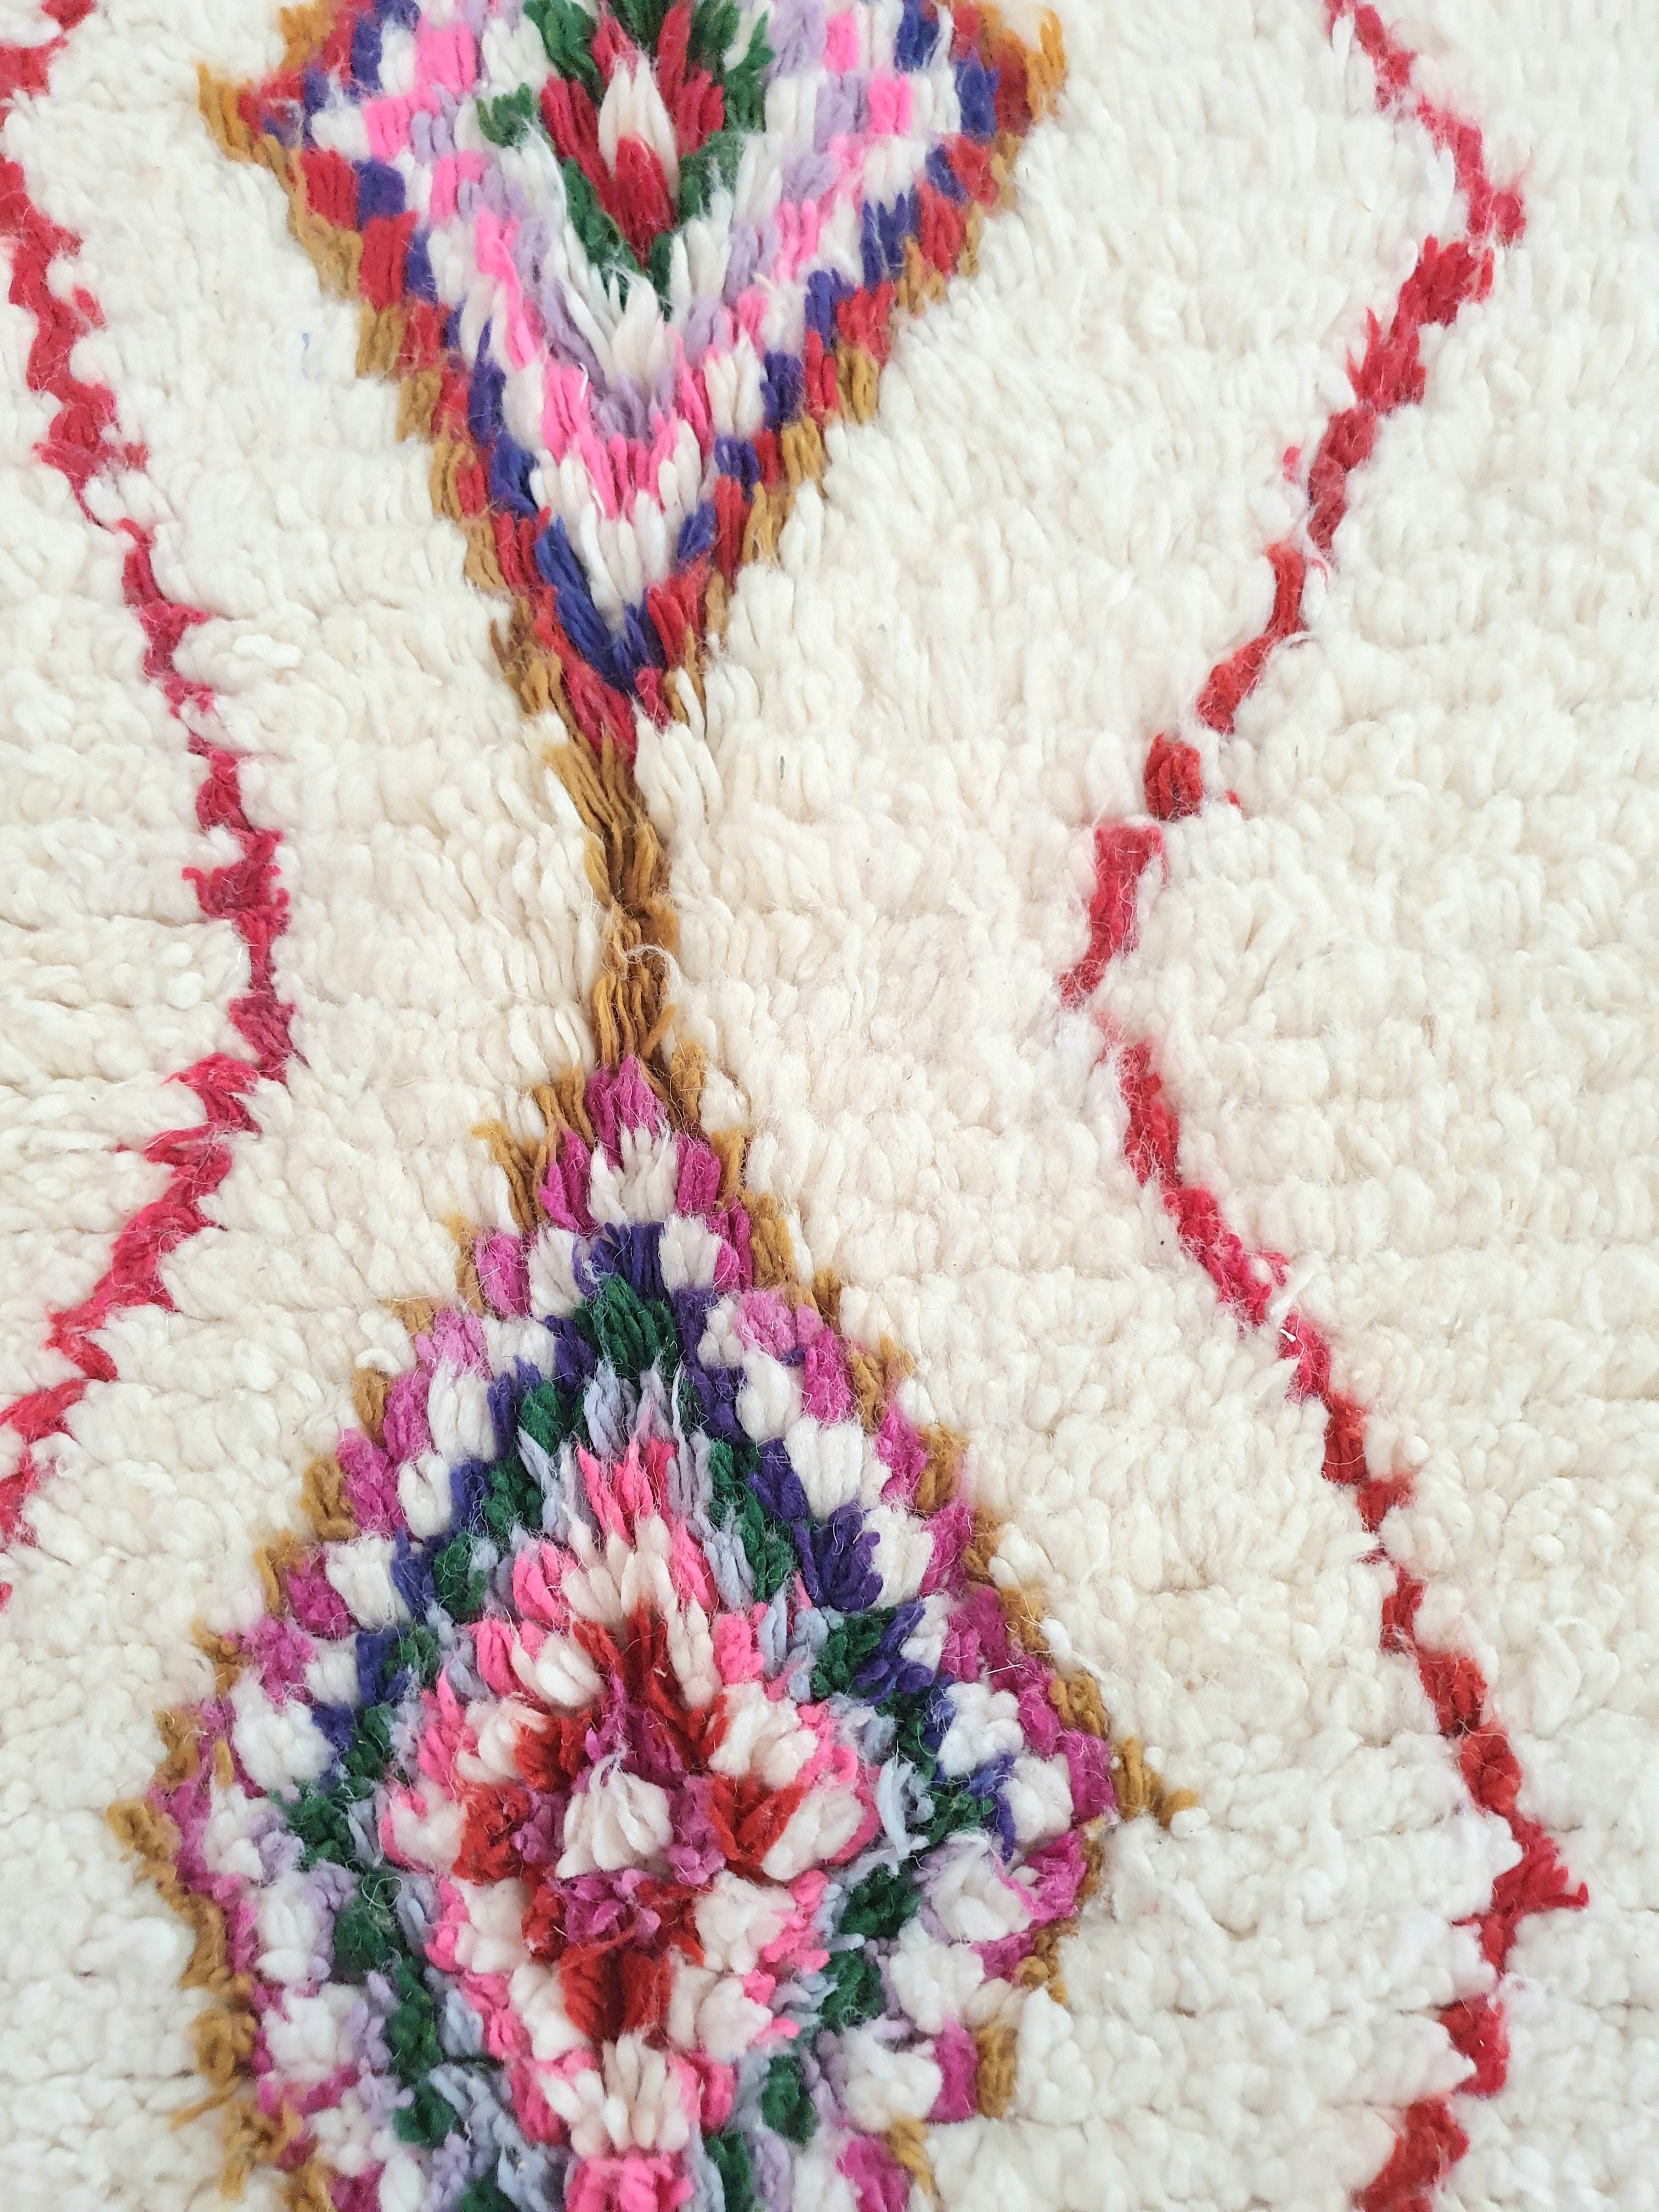 Vrai tapis berbere Marocain blanc cassé avec motifs aux couleurs vives